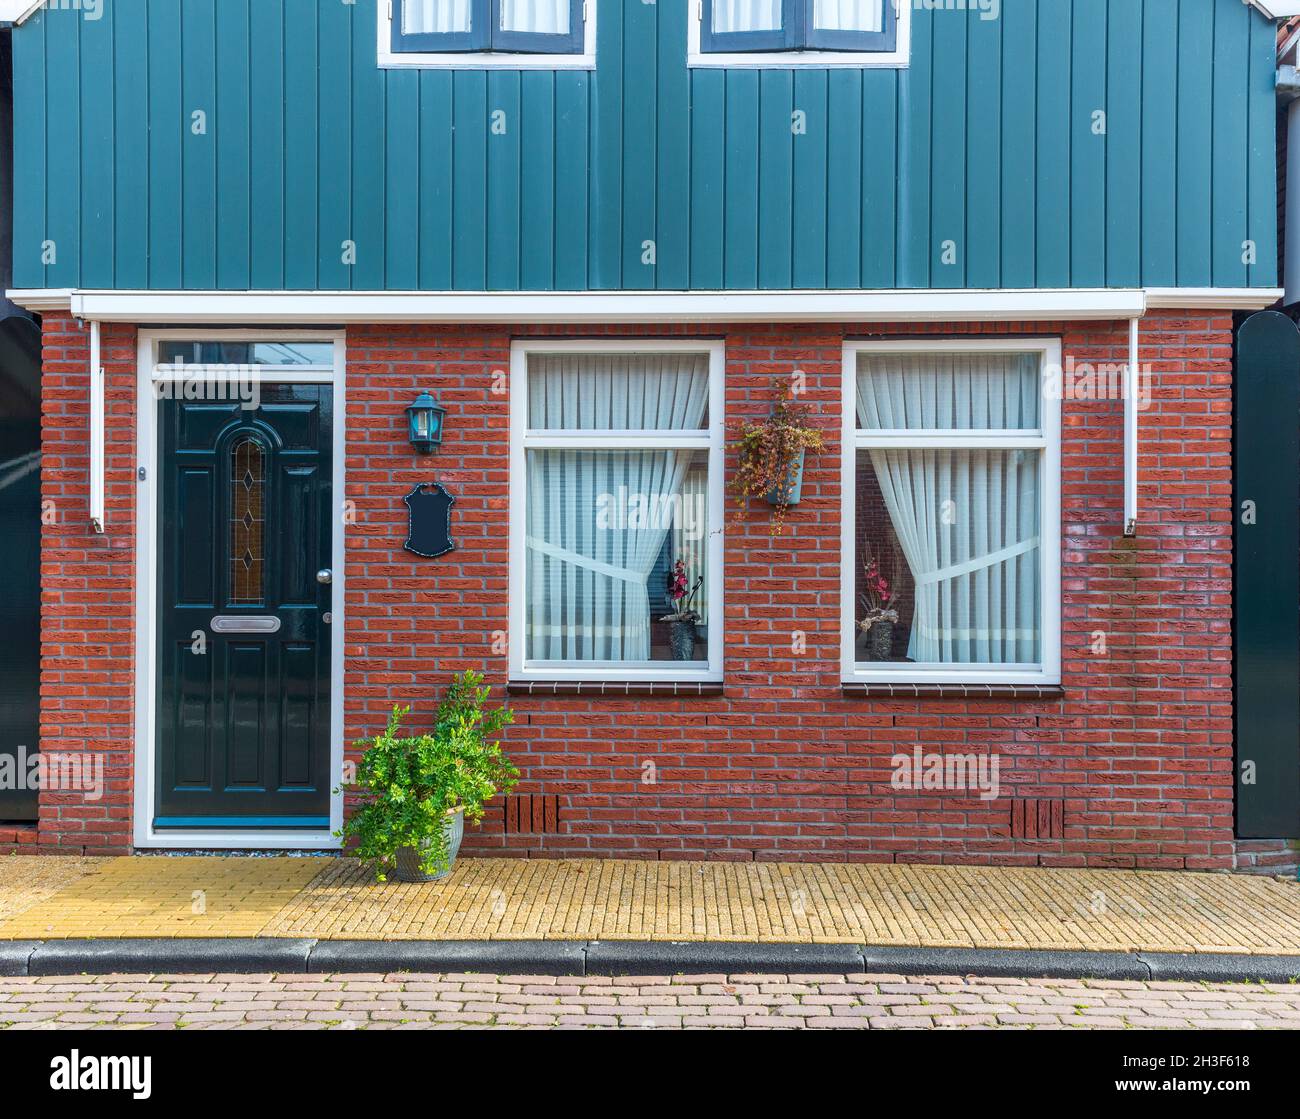 Le village hollandais typique abrite une façade.Style magnifique et authentique à Volendam.Hollande du Nord, pays-Bas. Banque D'Images